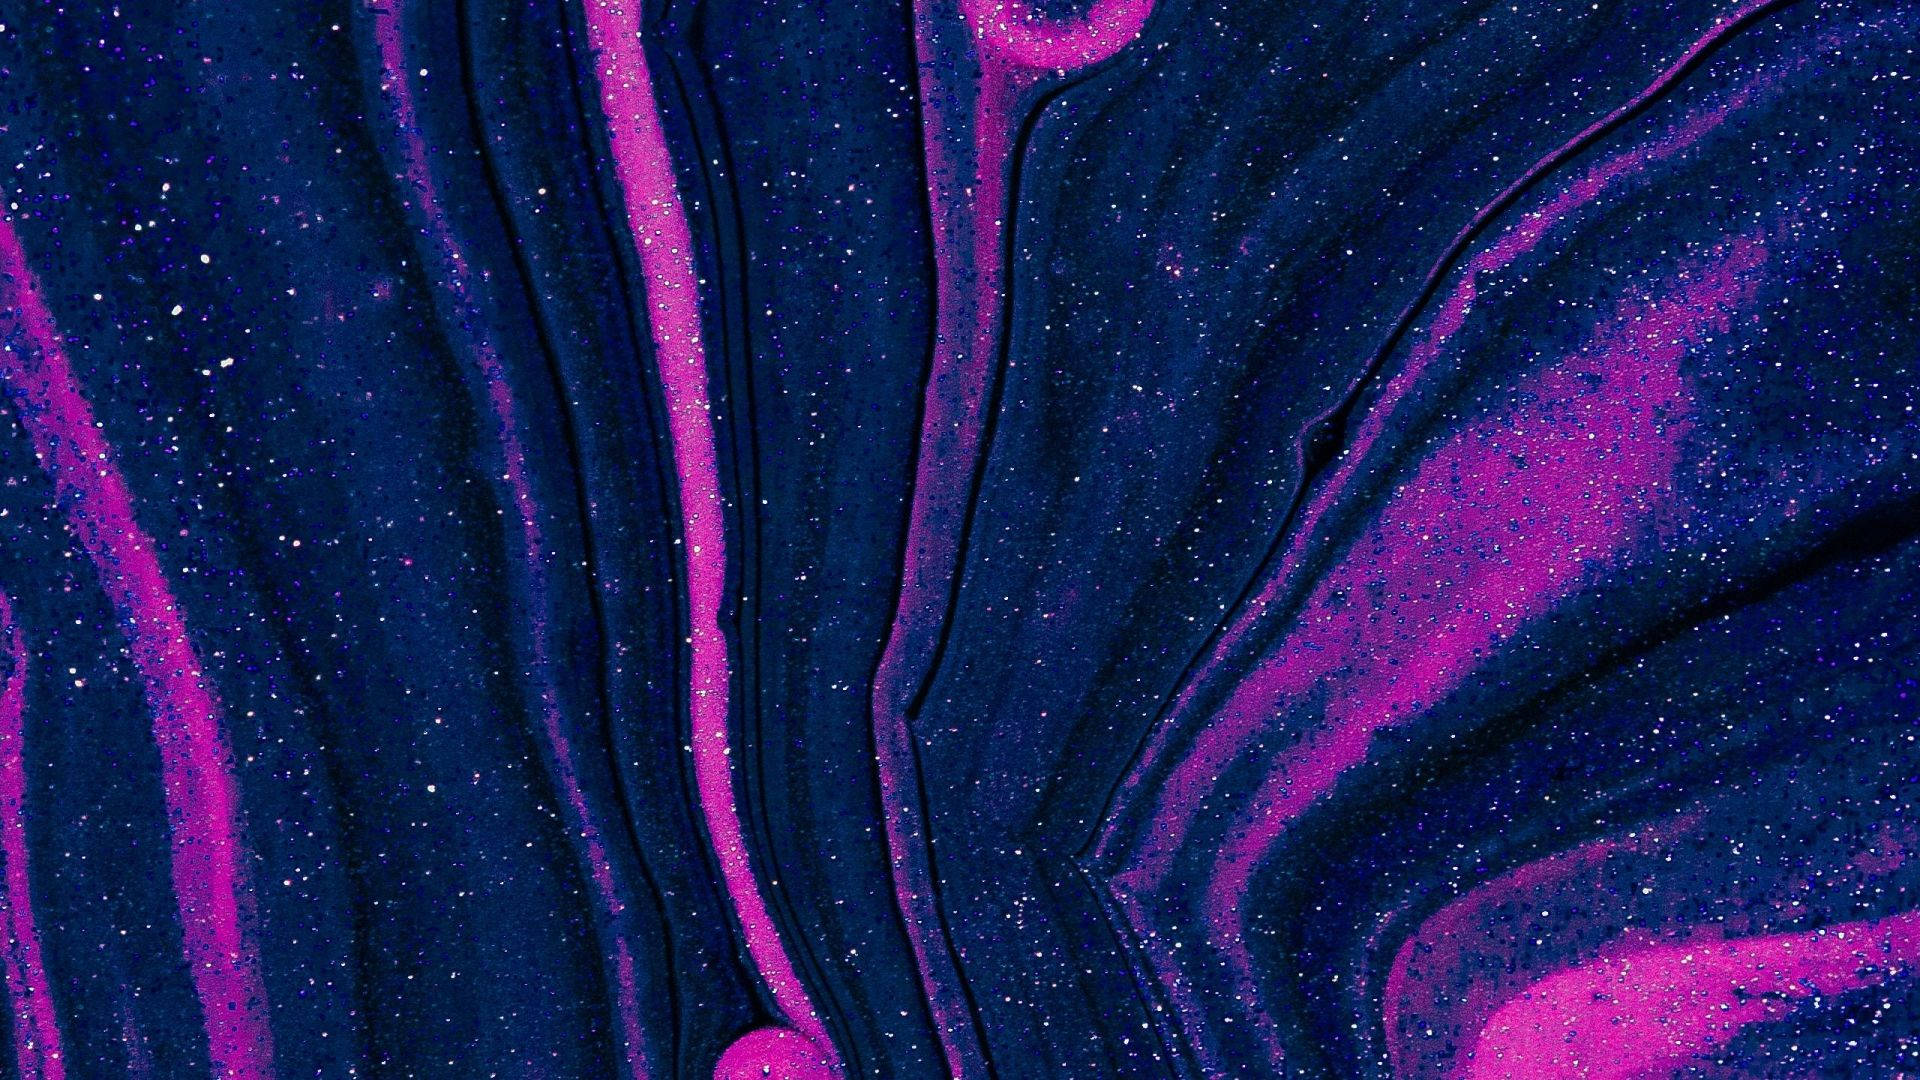 Papelde Parede Em Areia Rosa Escura E Azul. Papel de Parede